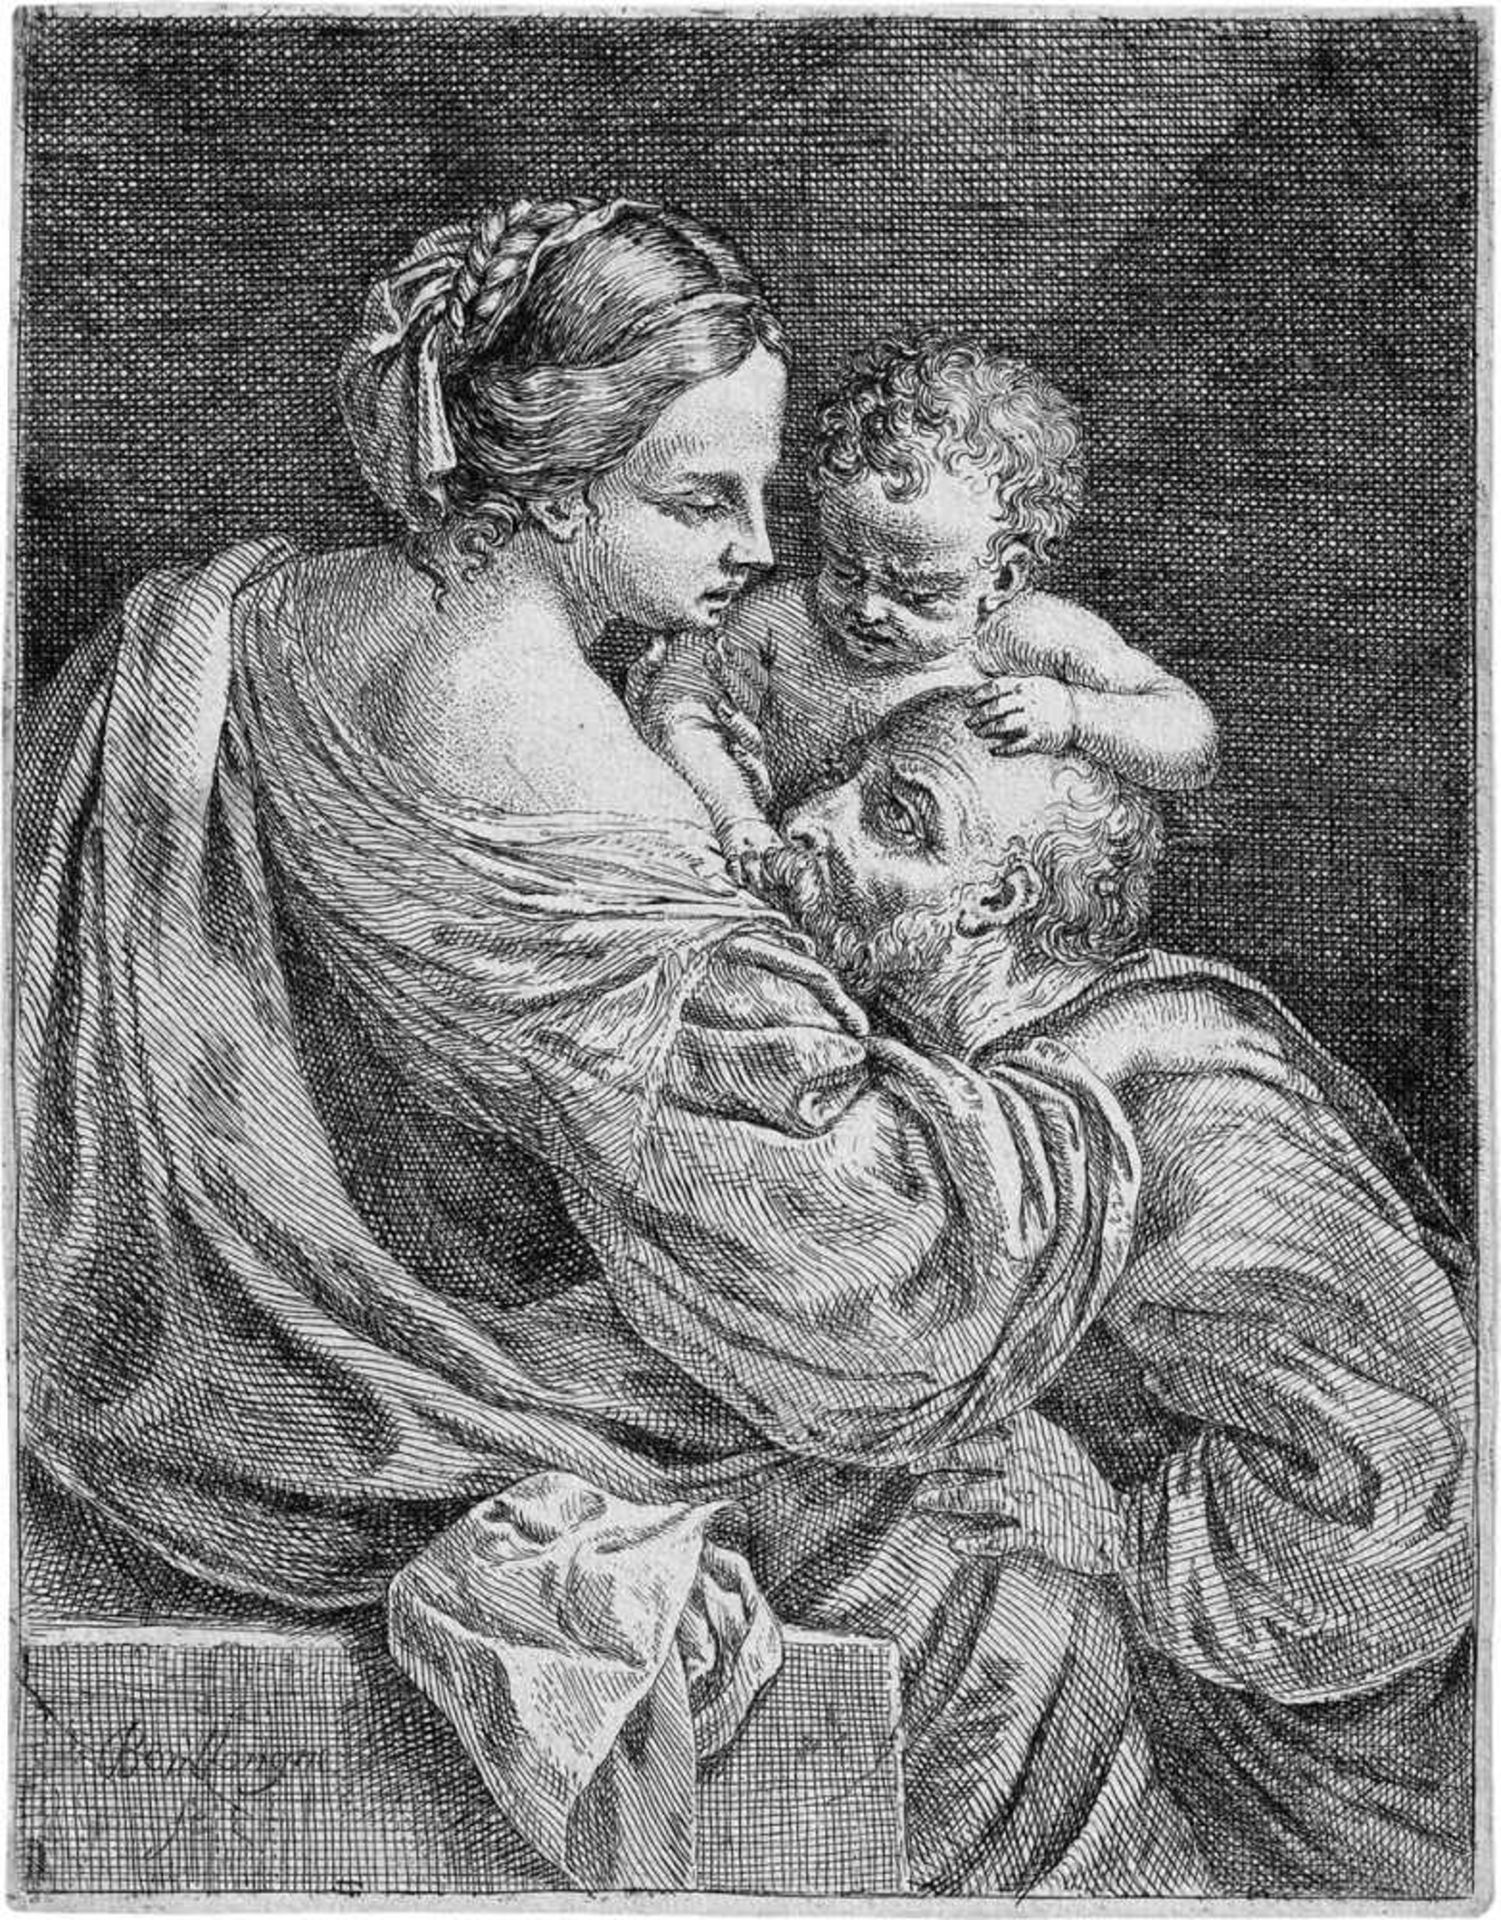 Boullogne, Louis de: La Charité romaineLa Charité romaine. Radierung. 23,7 x 18,5 cm. Robert-